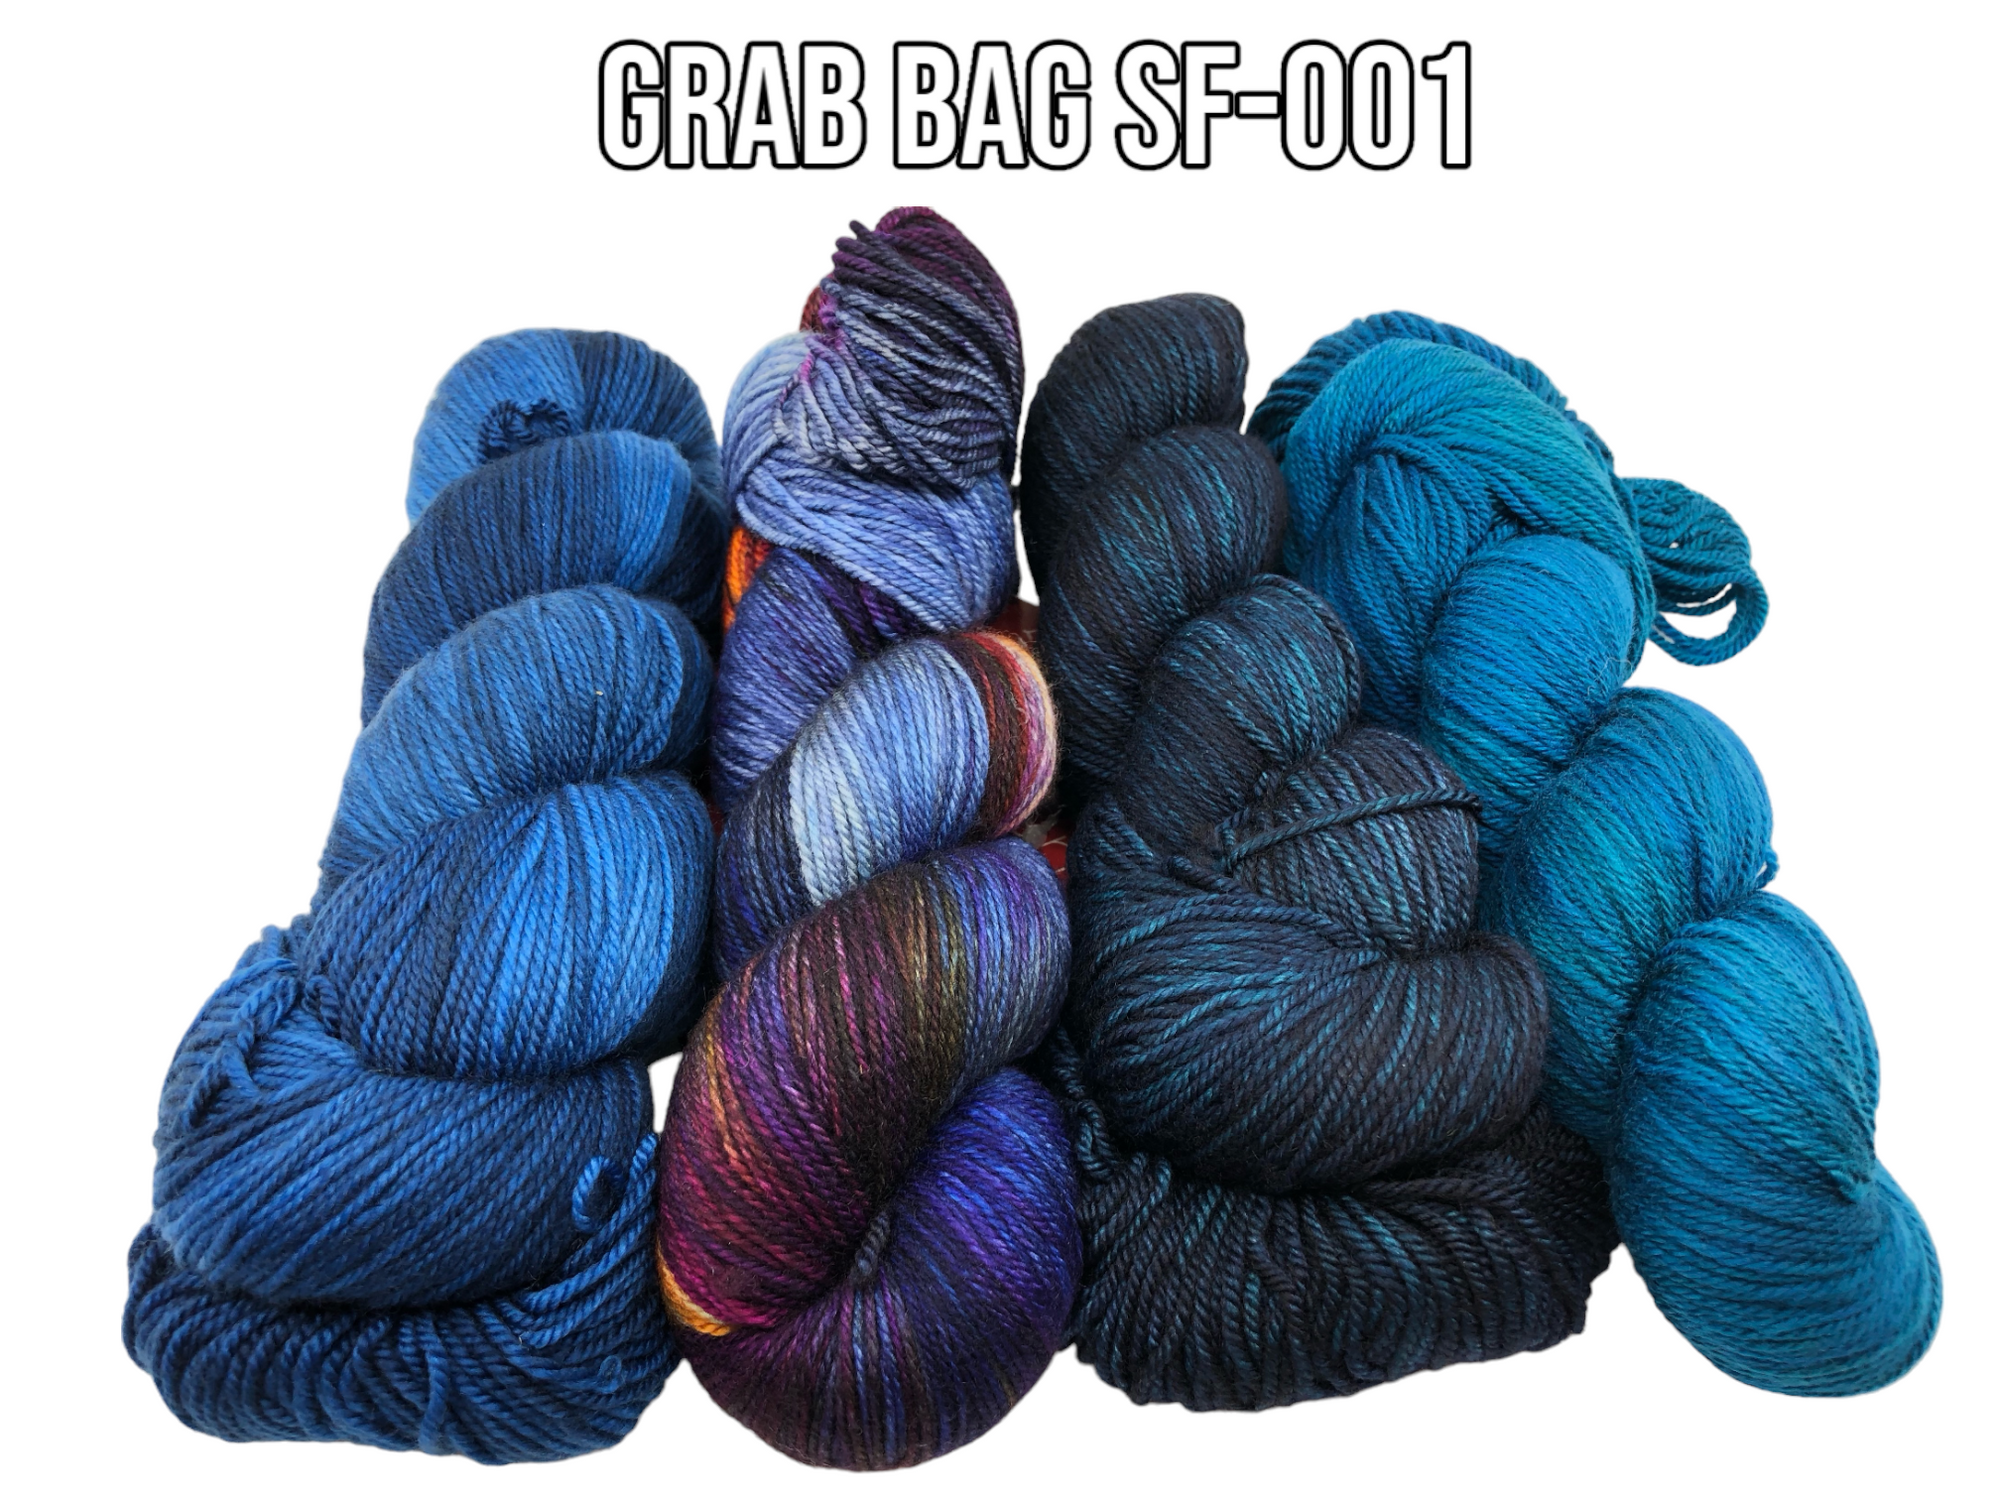 Grab Bag SF-001